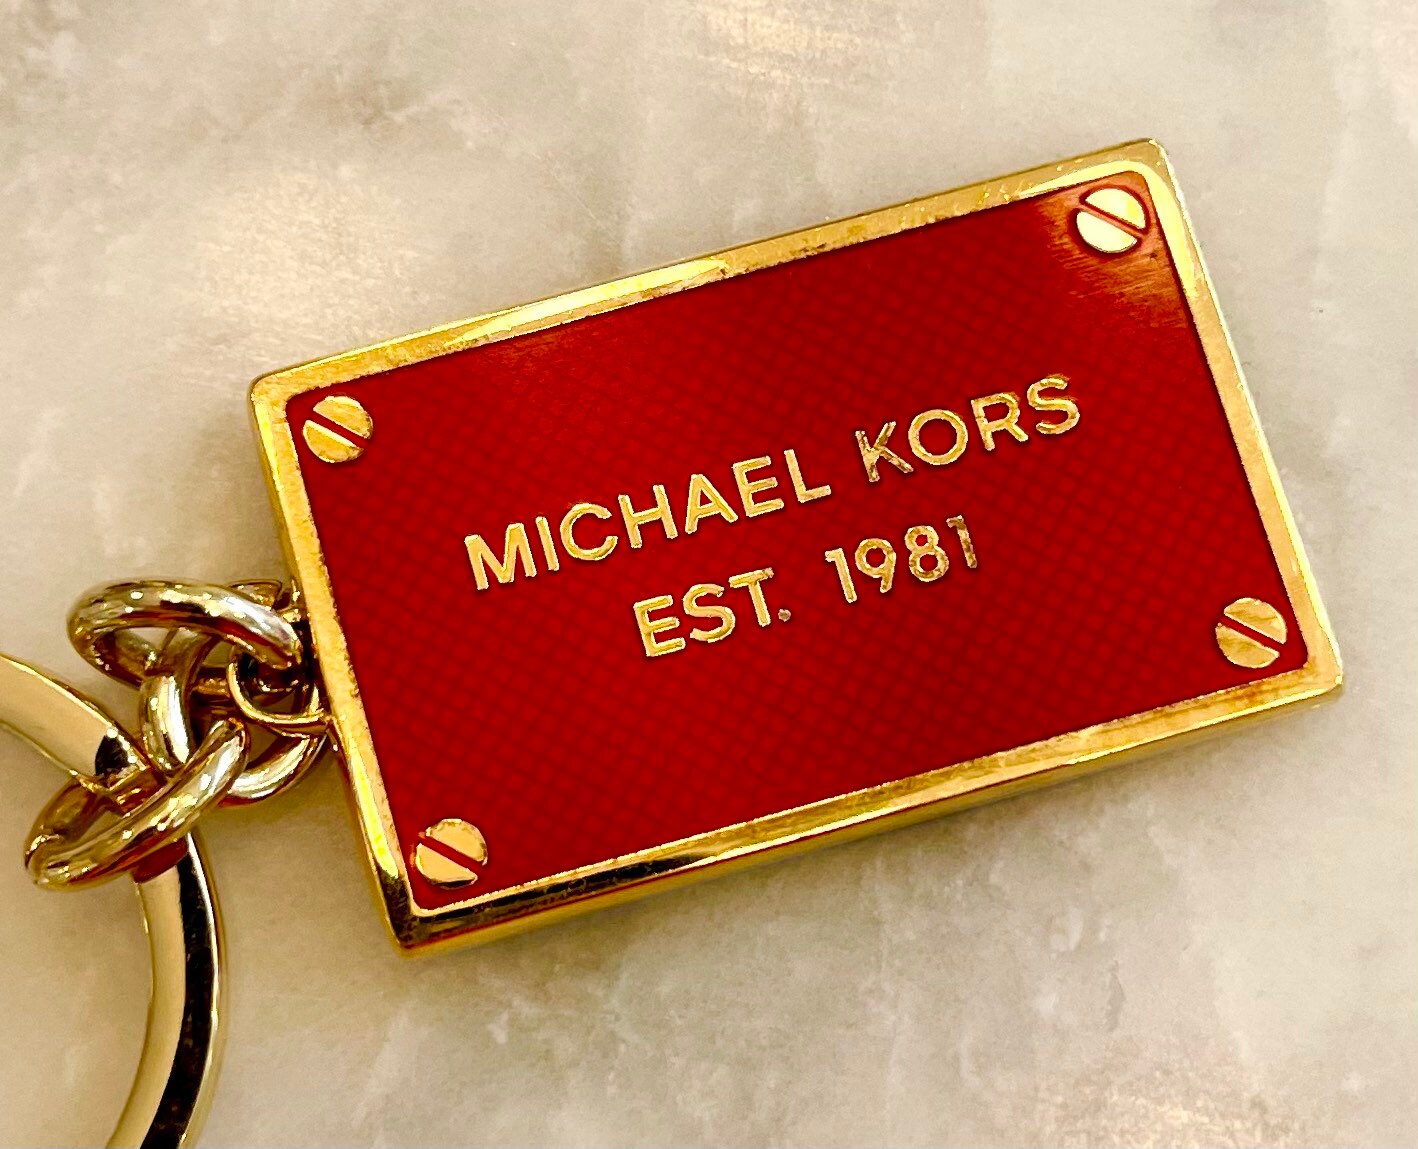 Michael Kors Keychain - Etsy UK